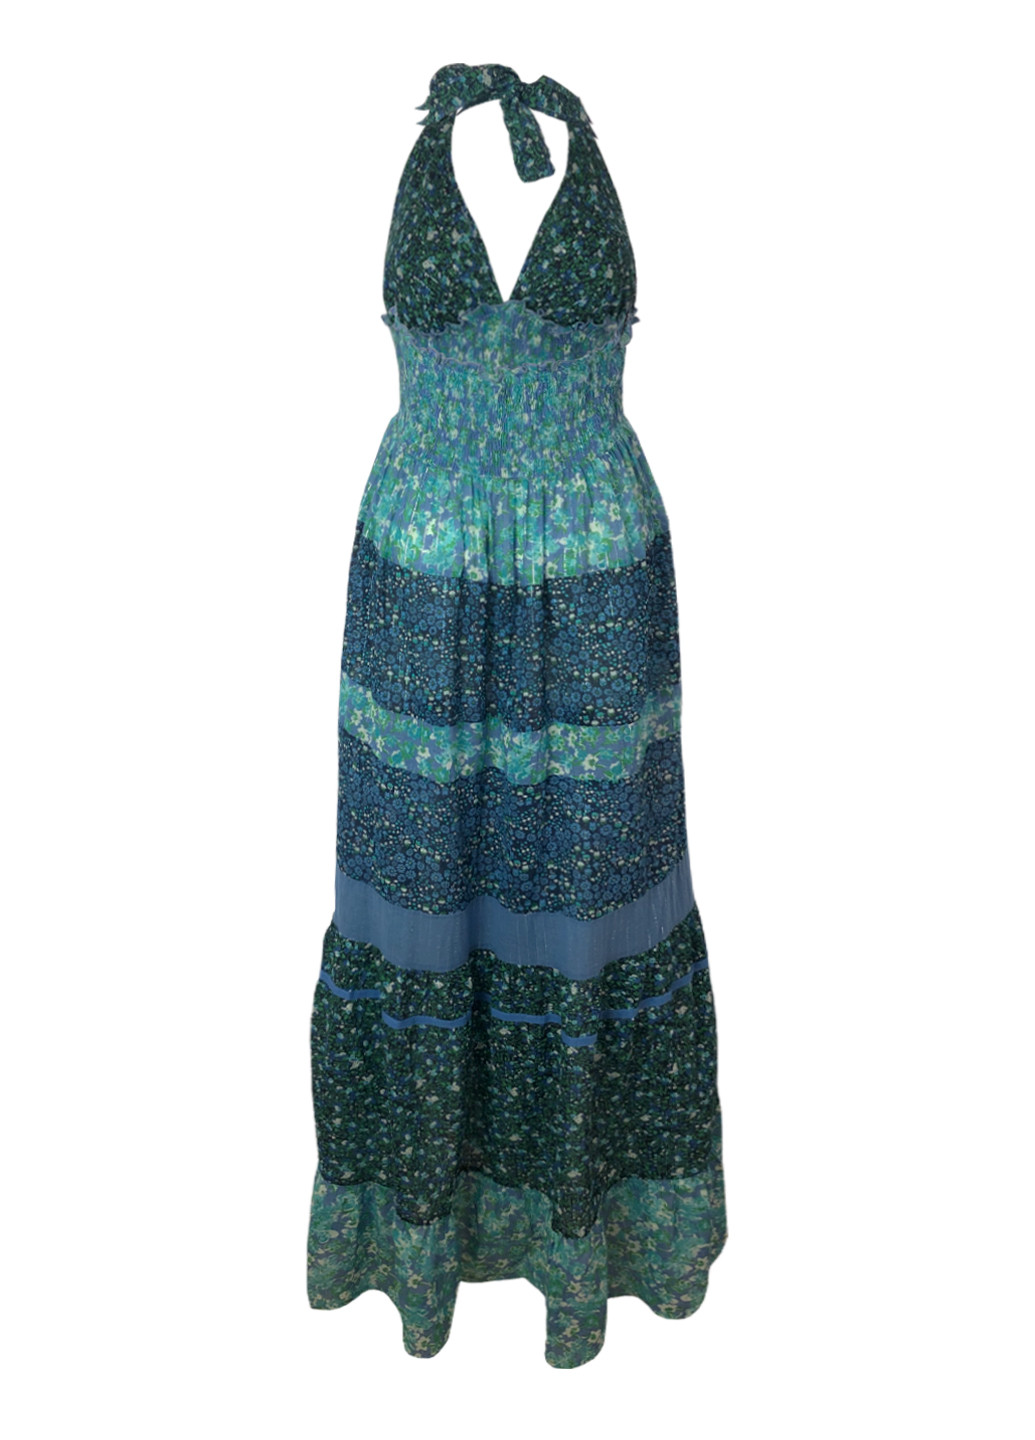 Комбинированное повседневный платье-сарафан с открытой спиной, с пышной юбкой, с открытыми плечами New Look с цветочным принтом